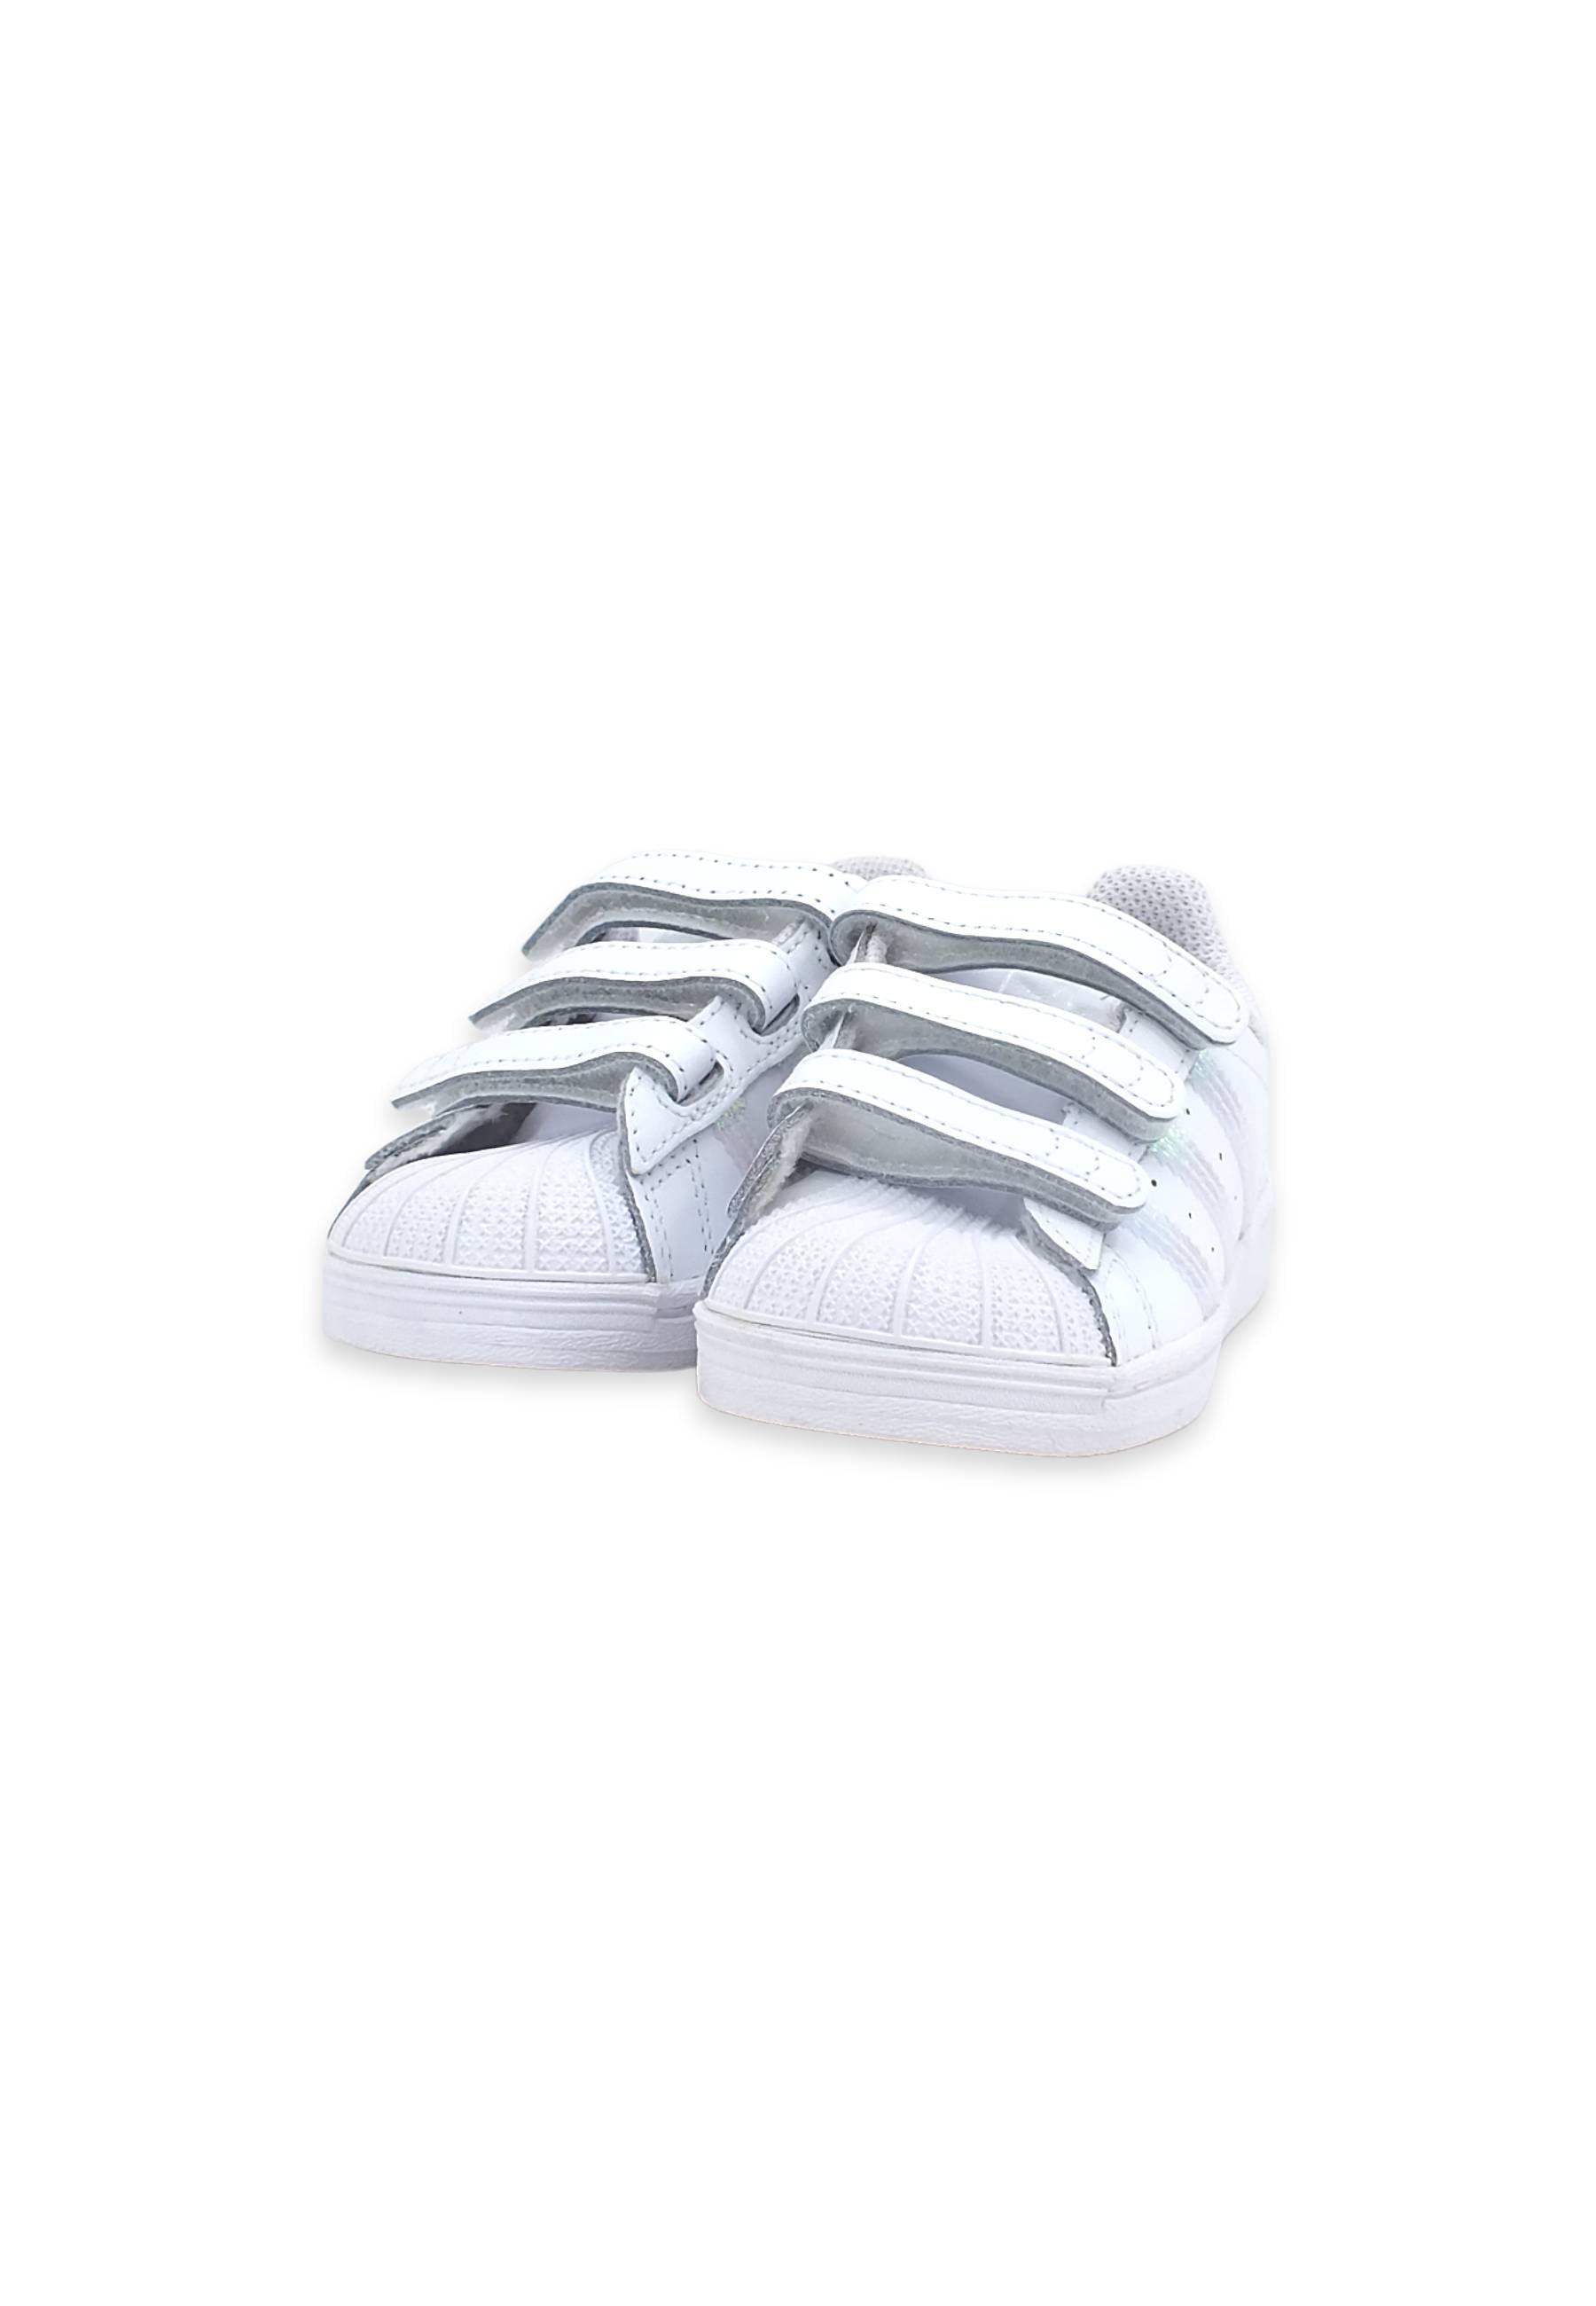 ADIDAS Superstar Sneaker Bimbo White FV3657 - Sandrini Calzature e Abbigliamento